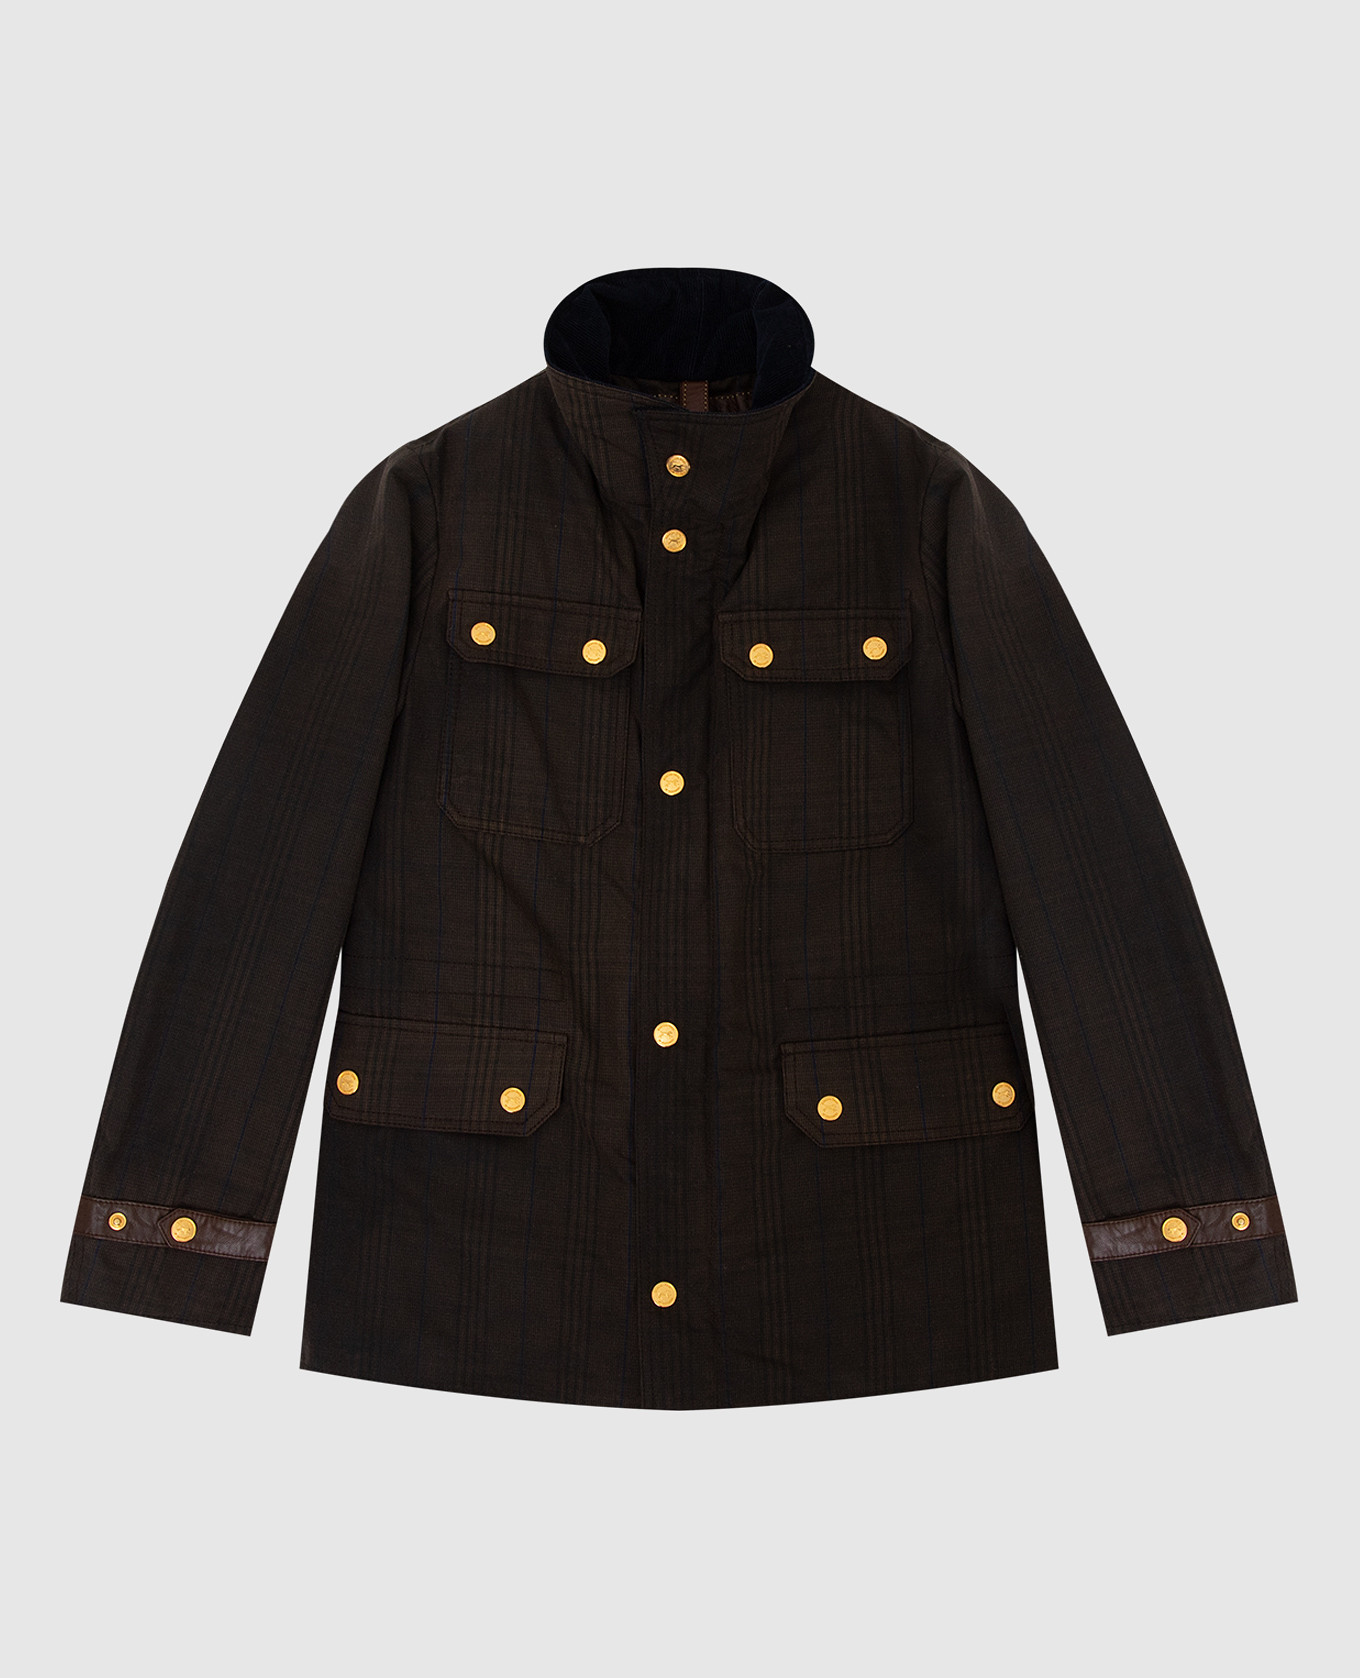 Children's brown checkered jacket